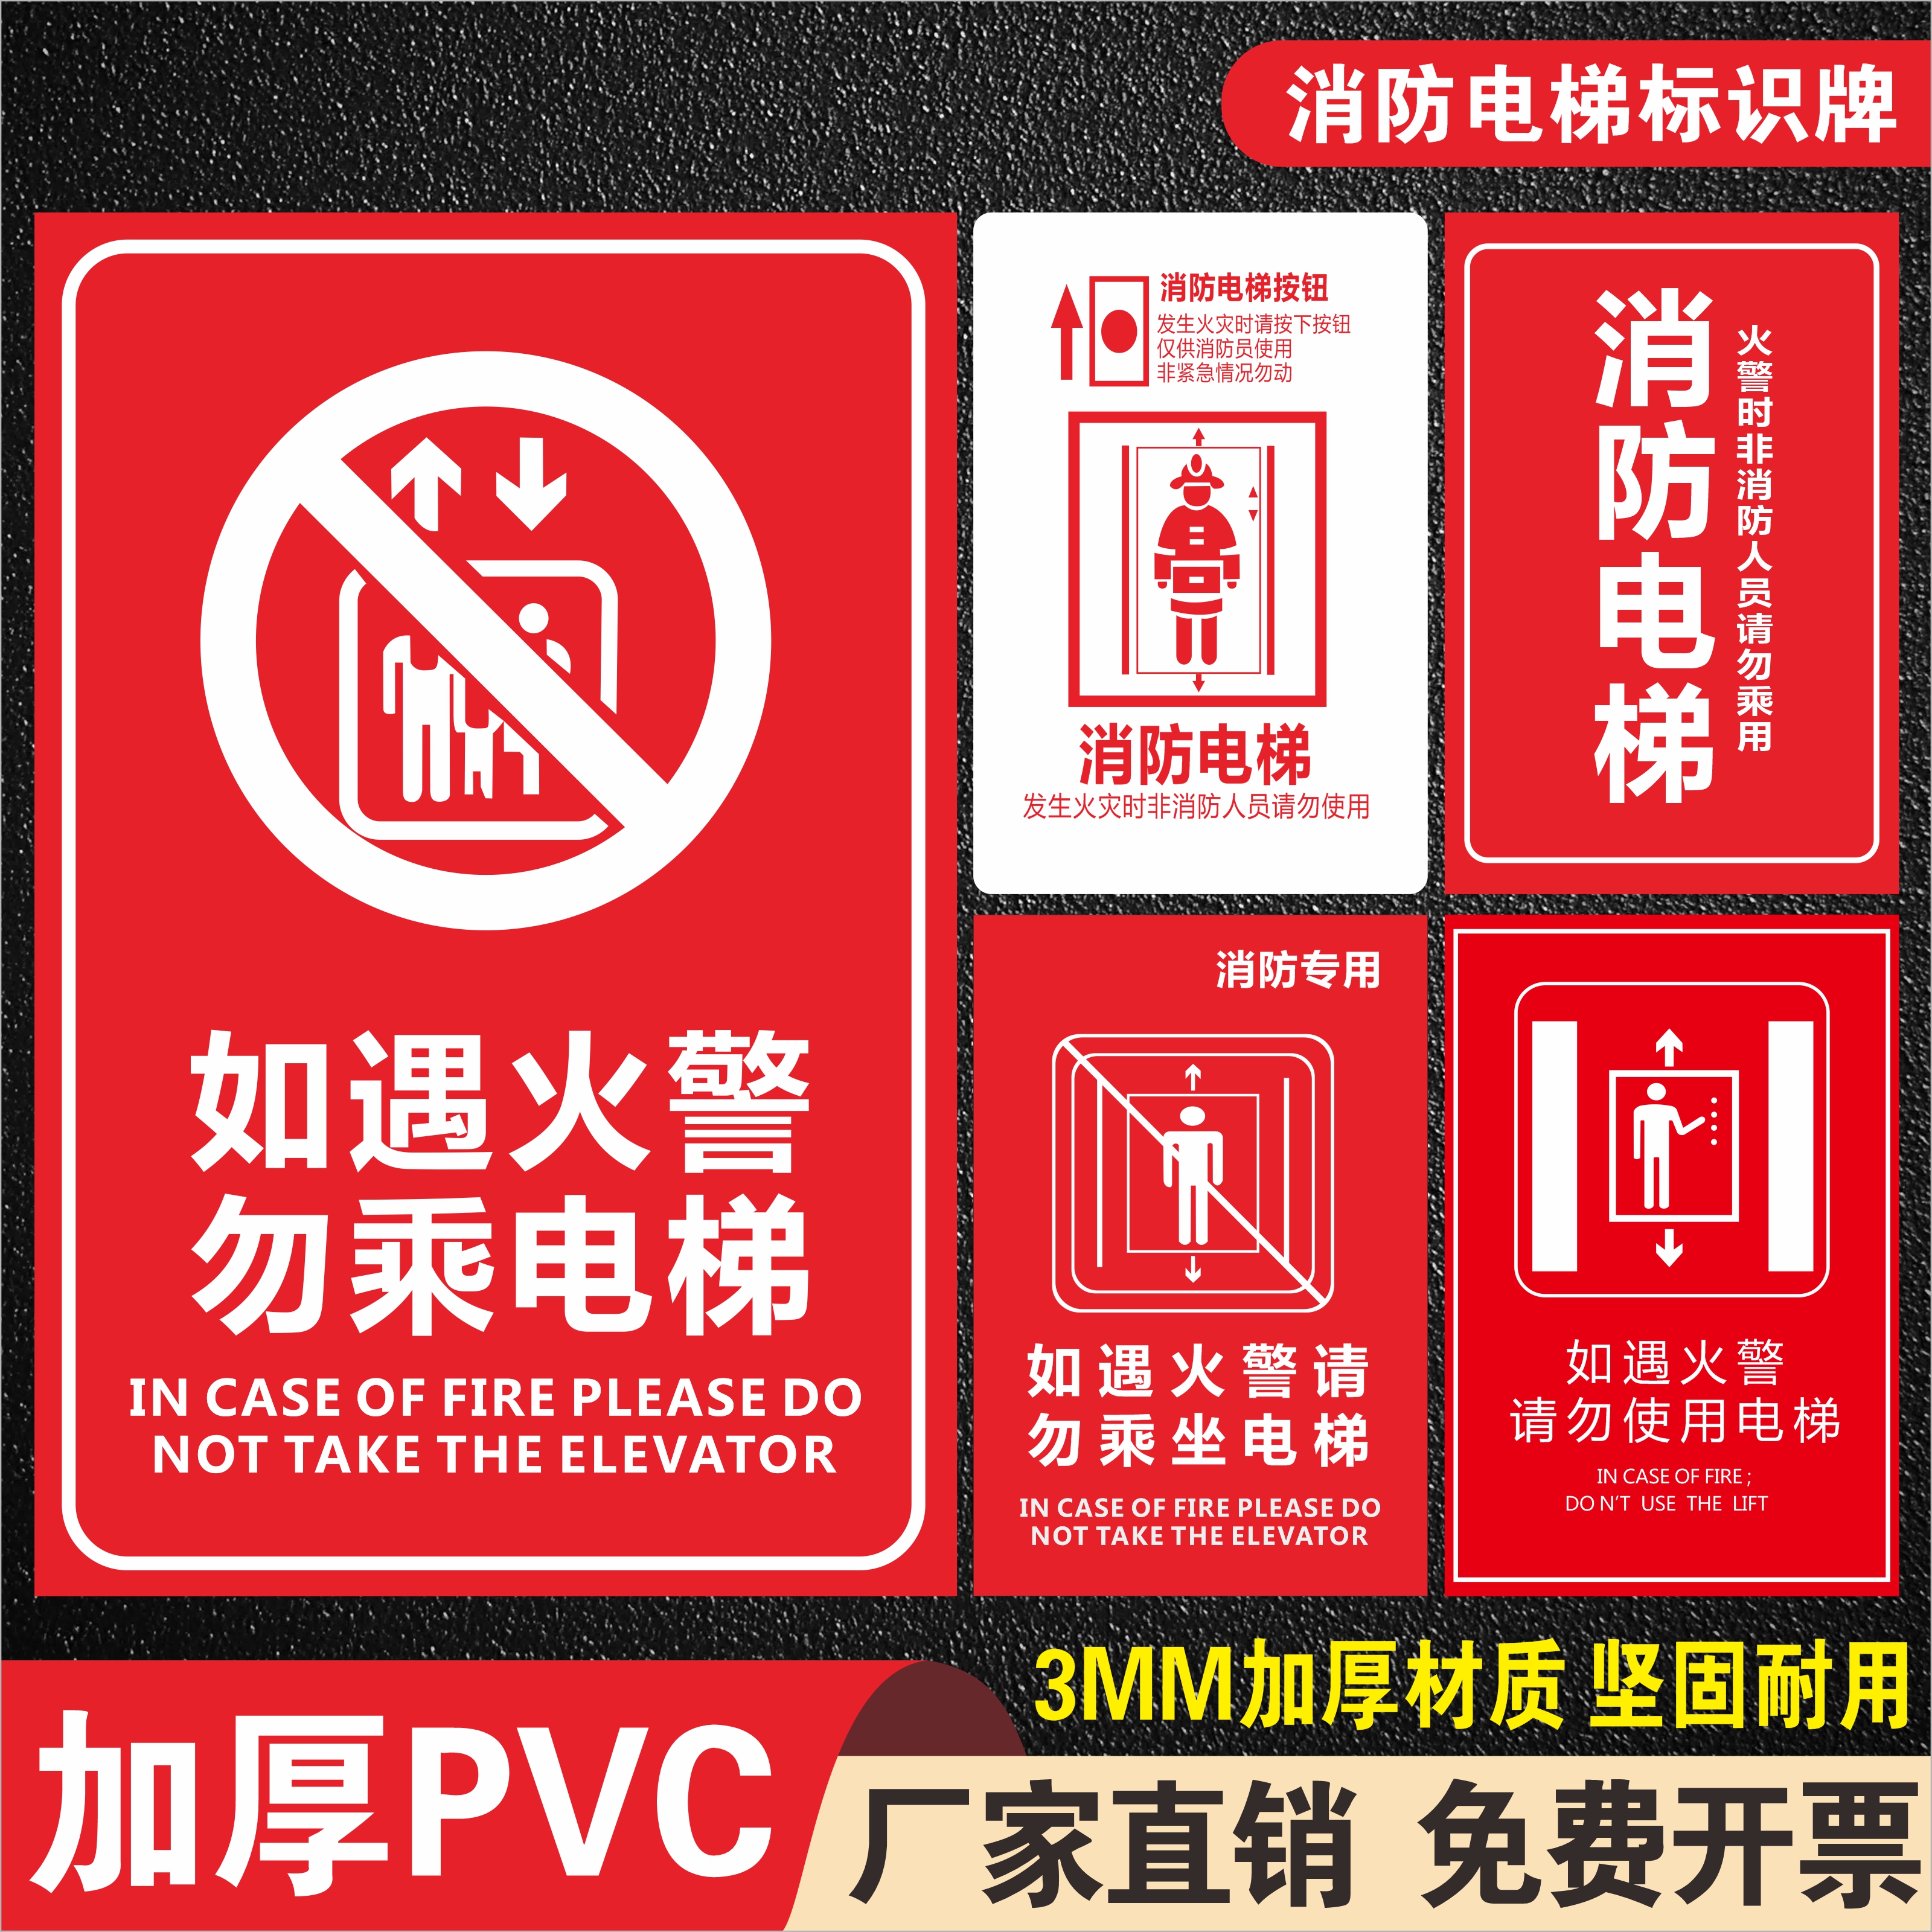 发生火灾时禁止乘坐电梯如遇火警请勿不准能使用消防安全专用操作管理范规章制度警示警告标识提示标示标志牌